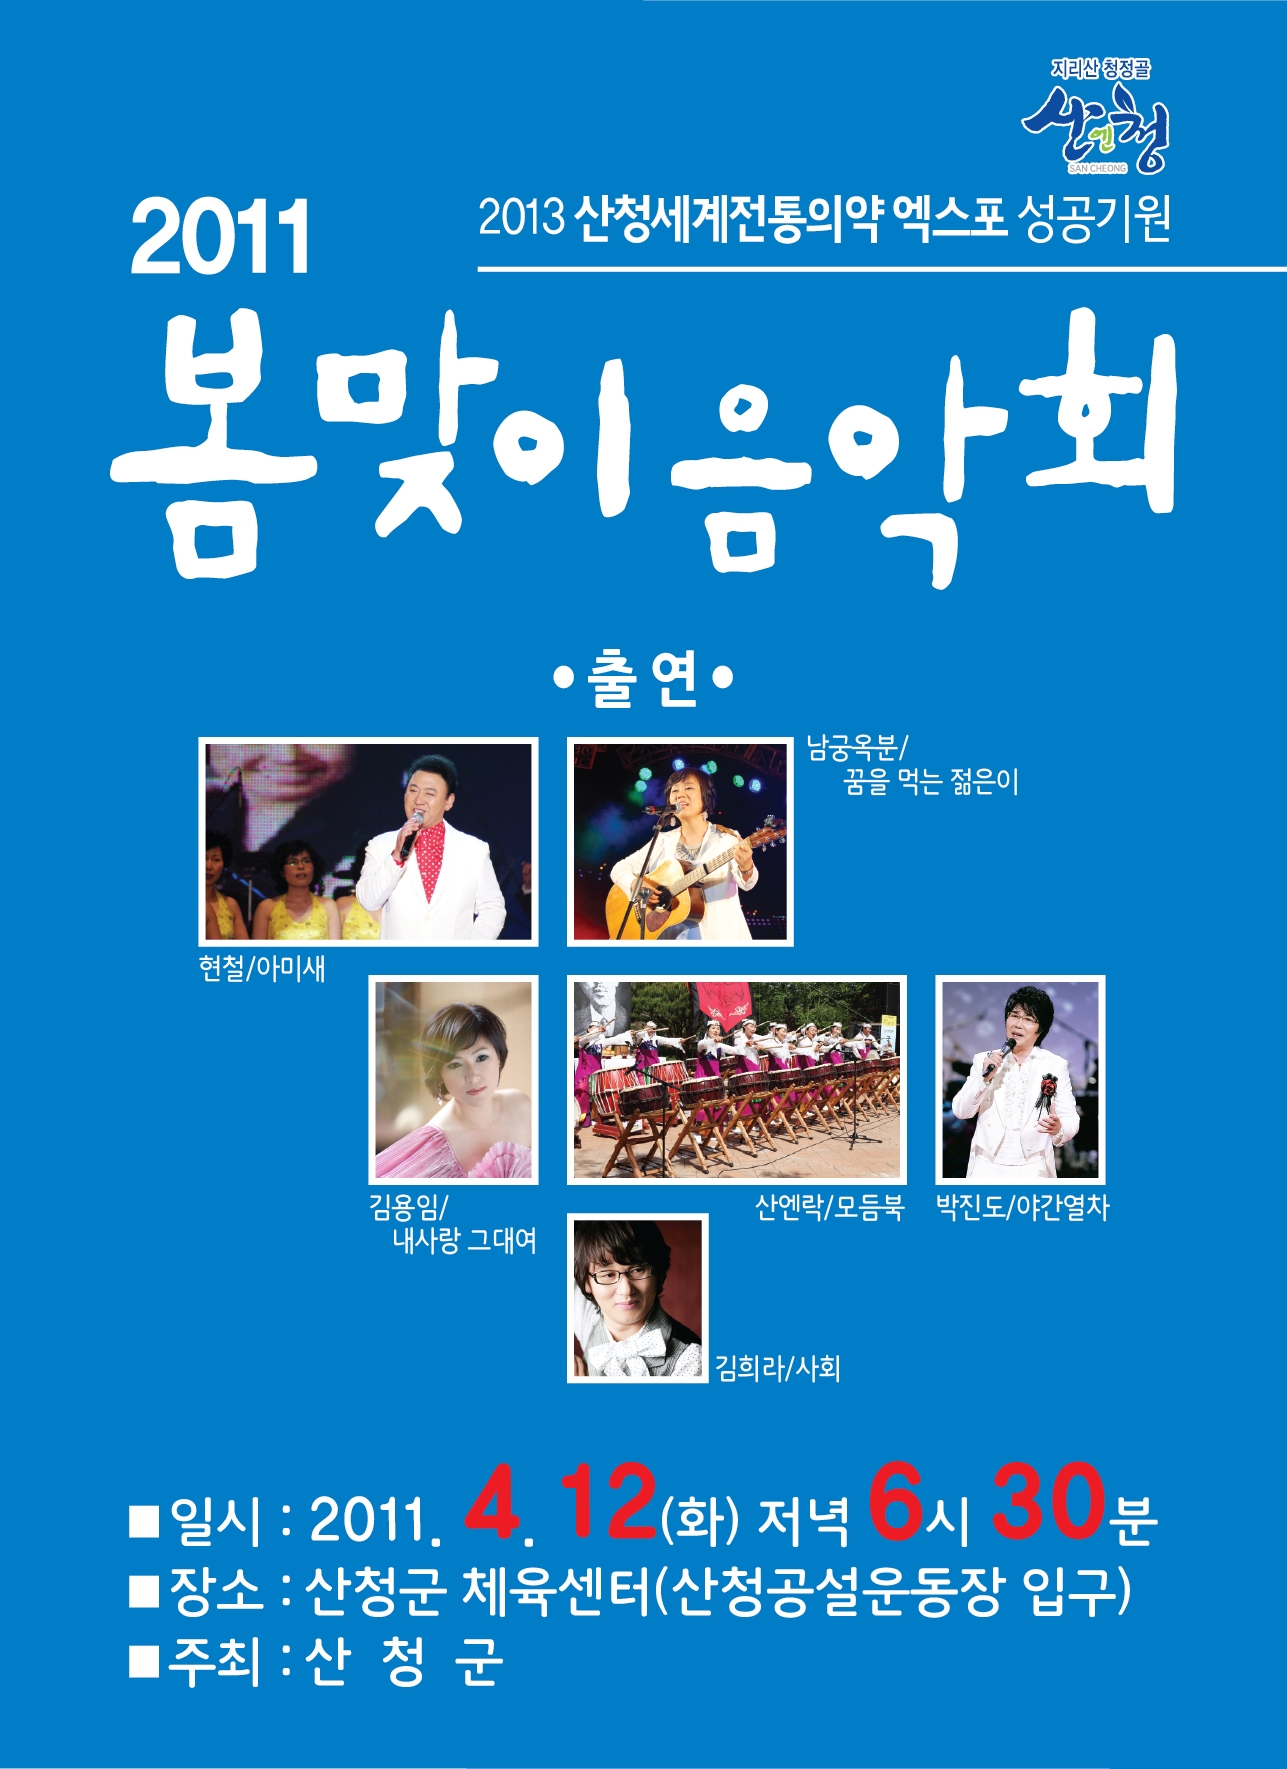 2013 산청세계전통의약엑스포 성공기원 및 2011 봄맞이 음악회 개최 1